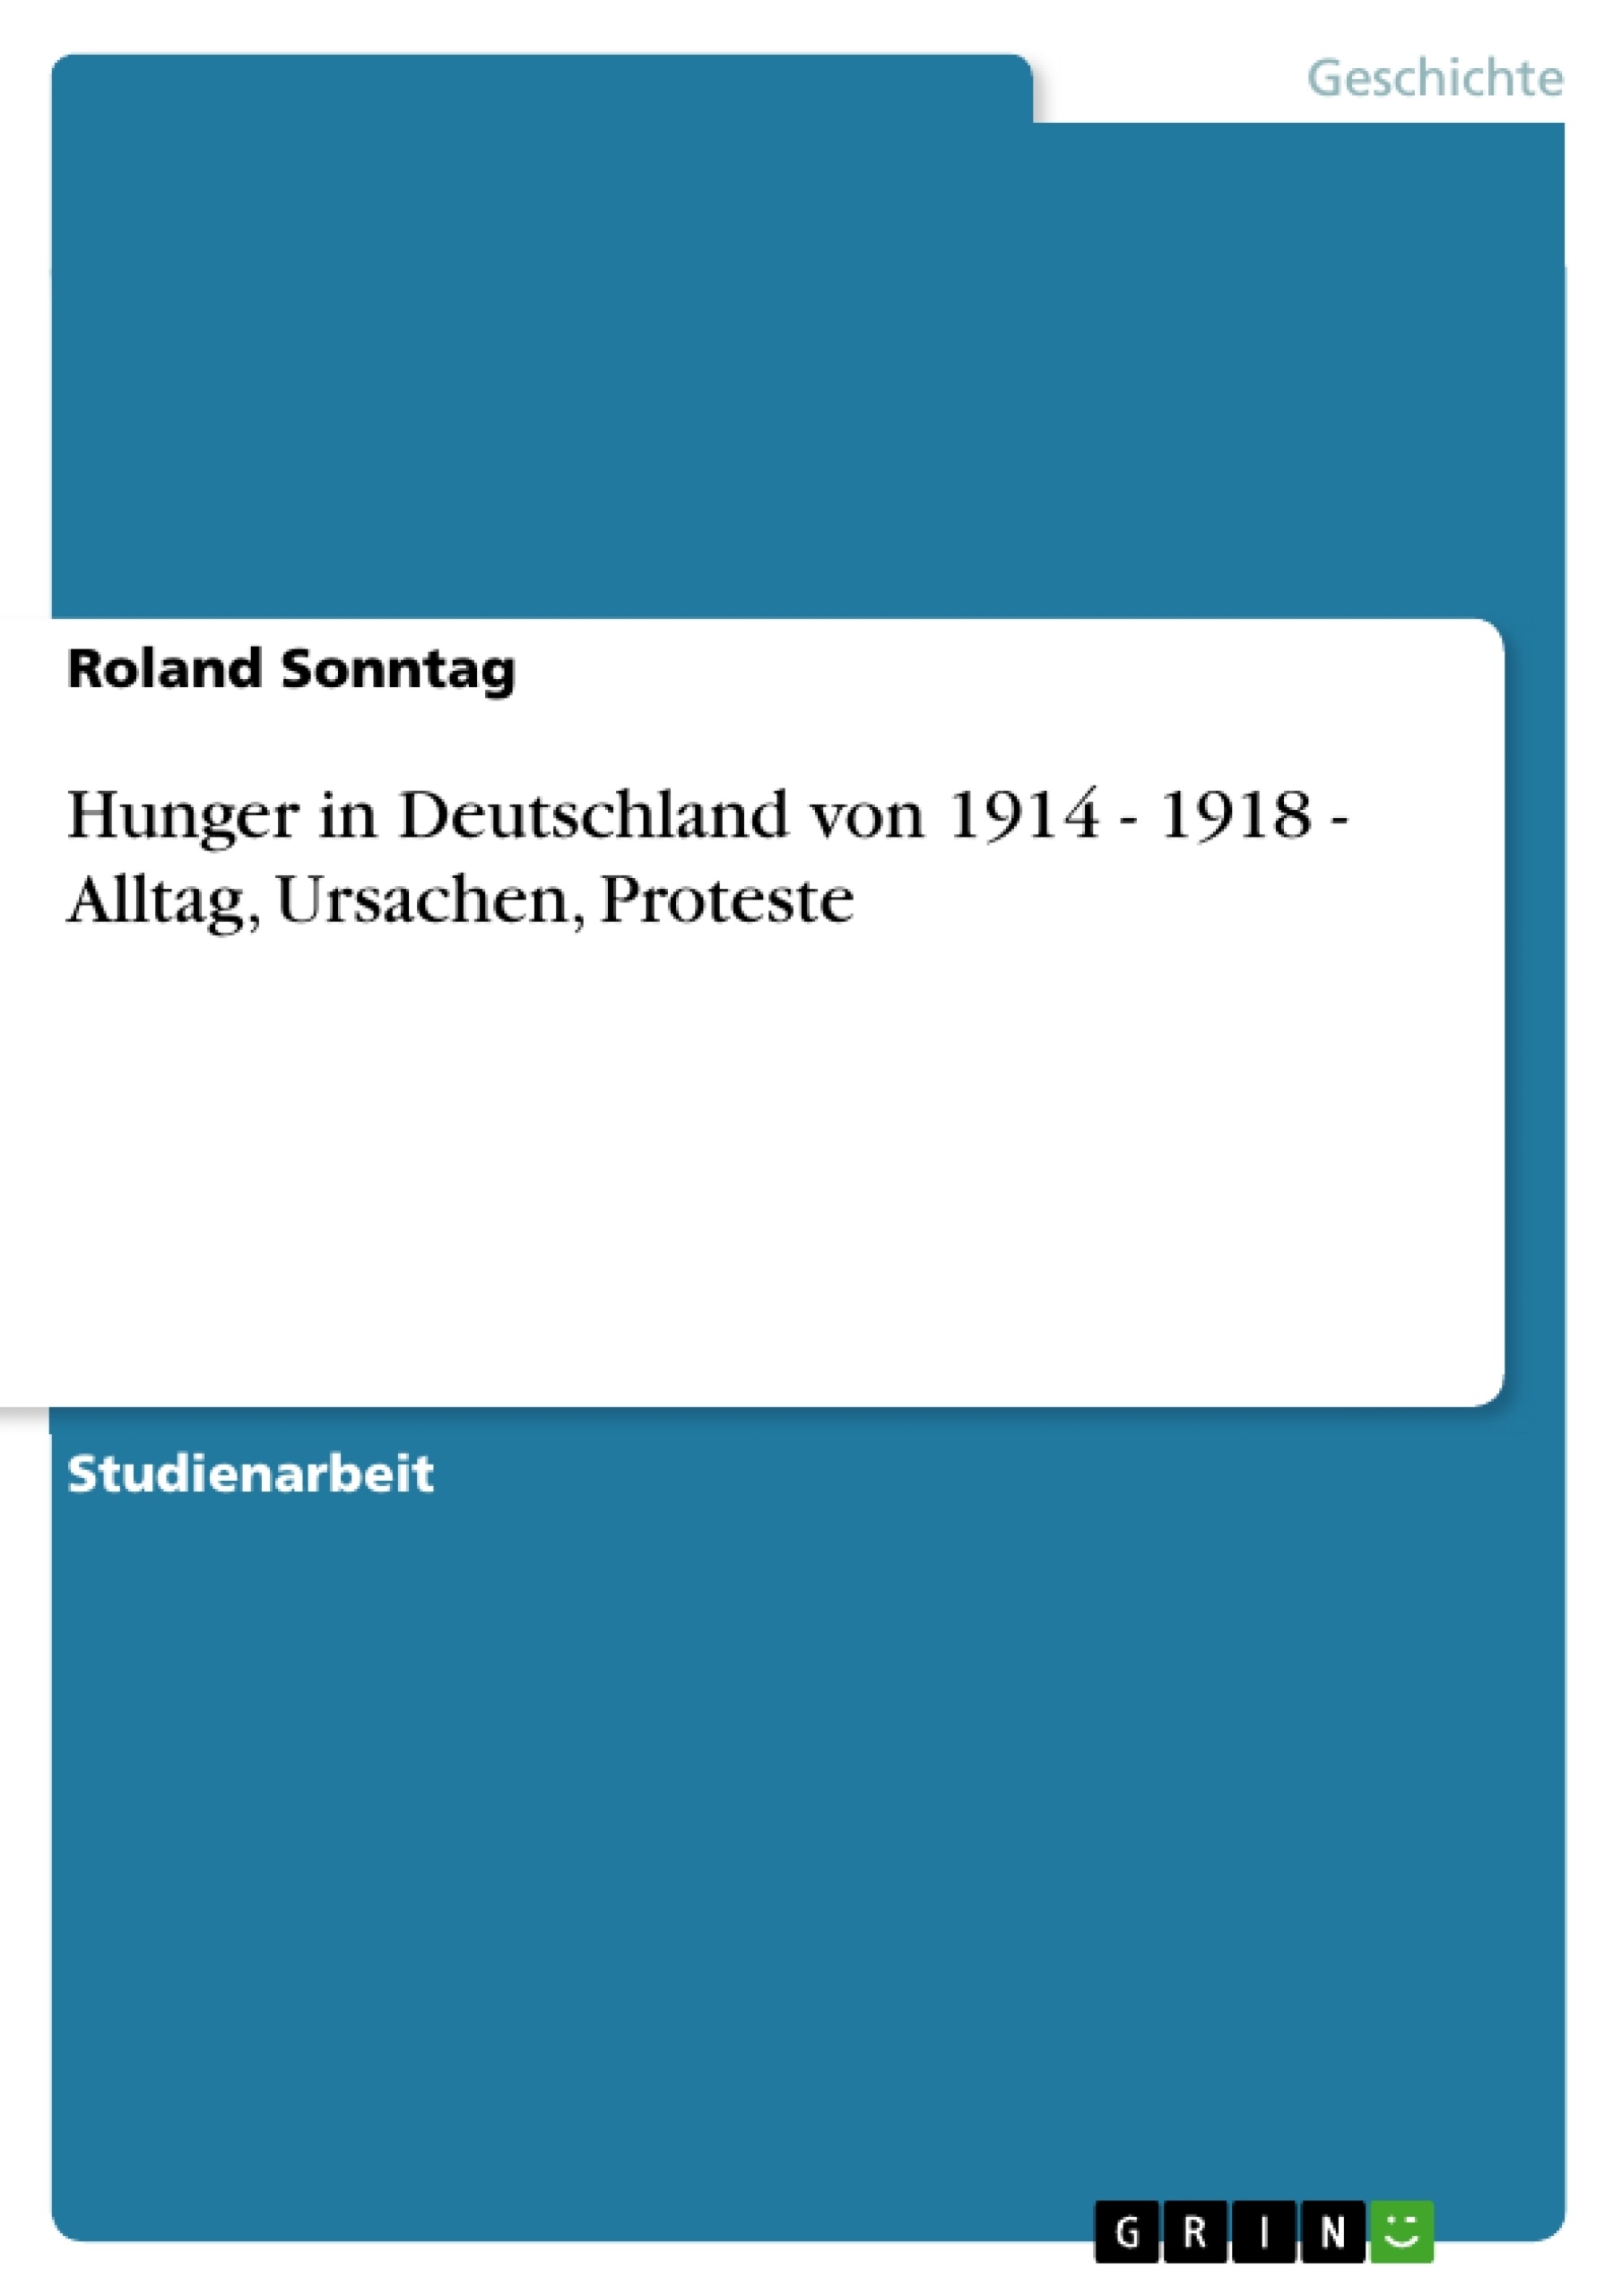 Title: Hunger in Deutschland von 1914 - 1918 - Alltag, Ursachen, Proteste